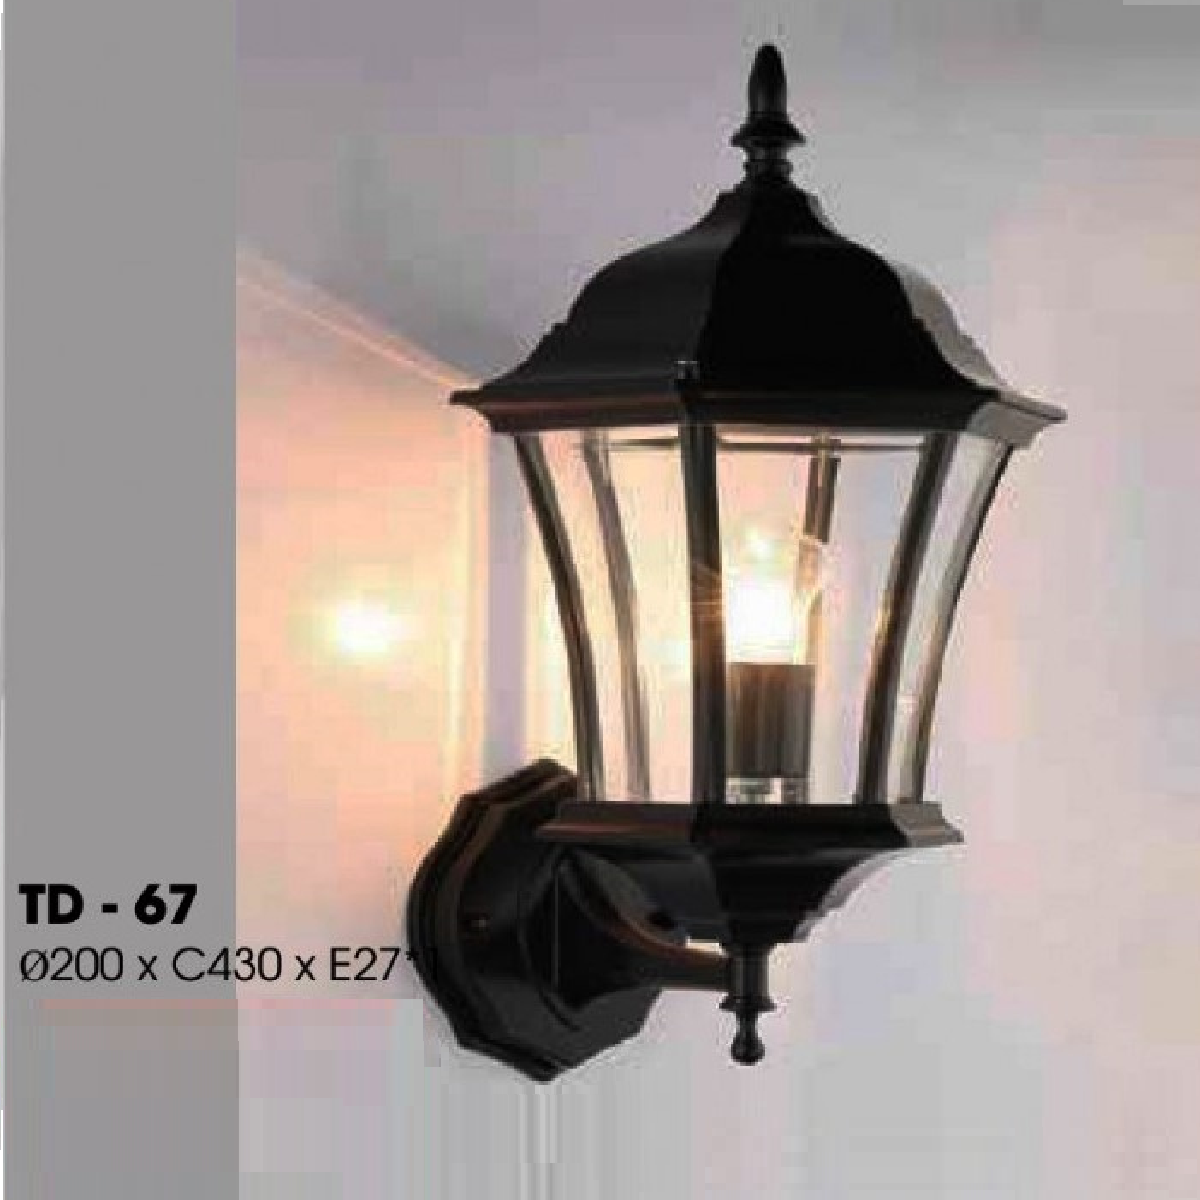 TD - 67: Đèn gắn tường ngoài trời - KT: Ø200mm x H430mm - Bóng đèn E27 x 1 bóng